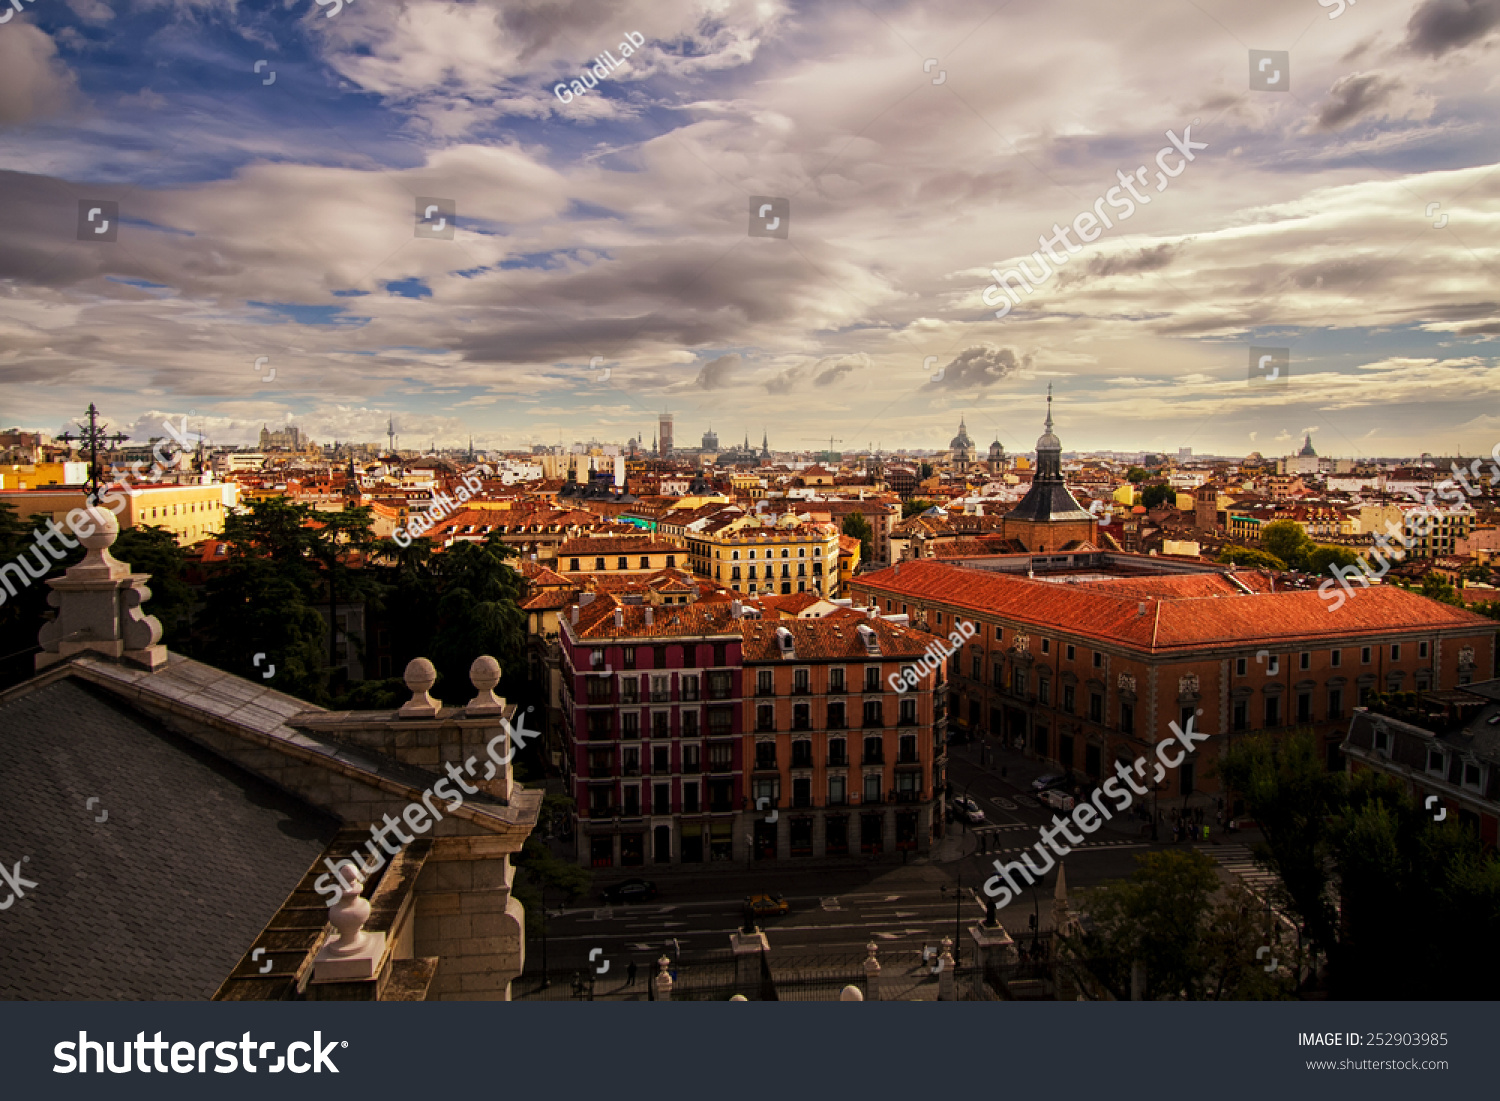 多云的天空美丽的马德里城市场景,从屋顶、高